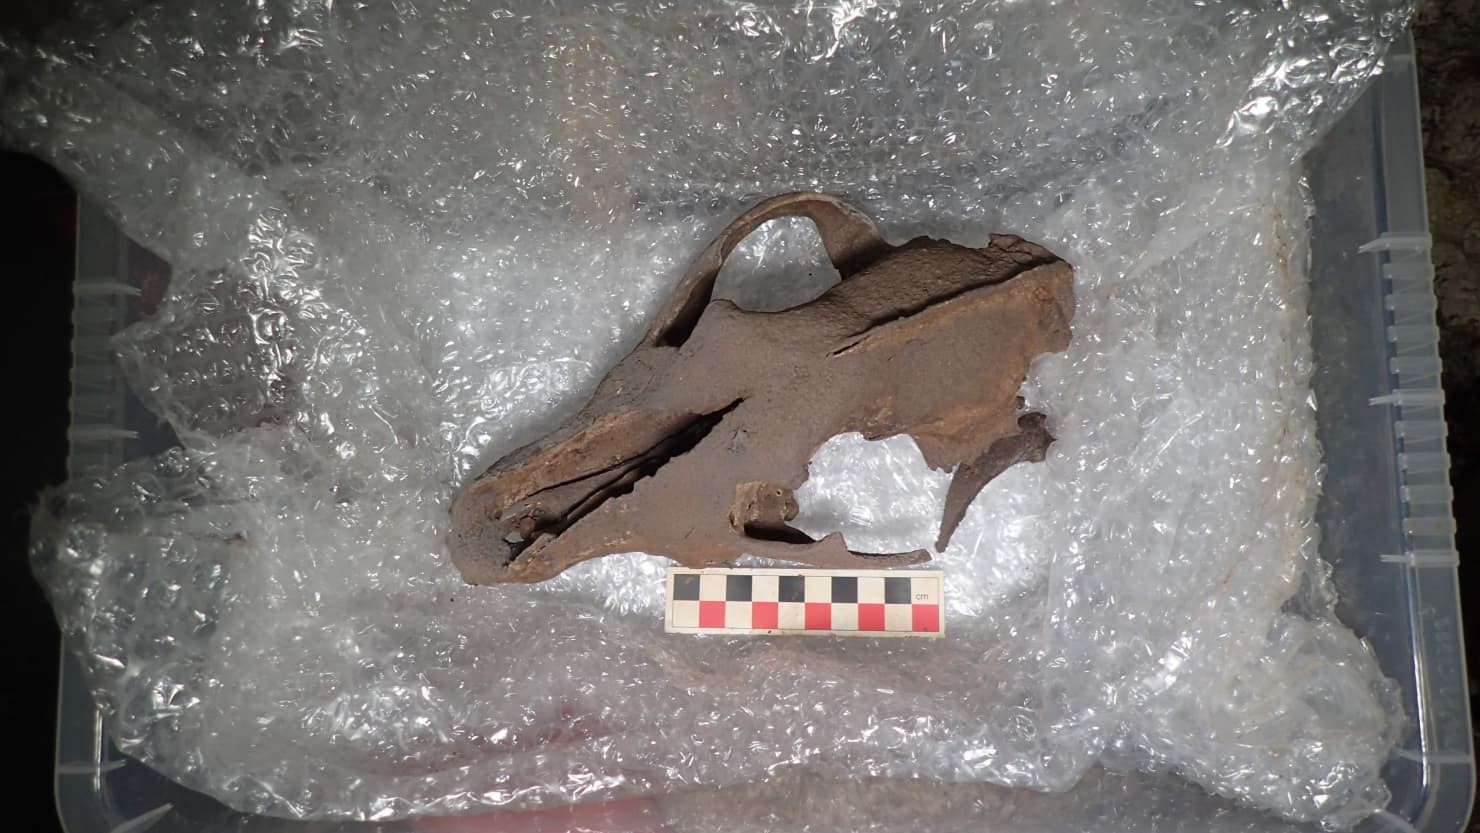 Crânio de lobo da Era do Gelo descoberto pela equipe de arqueólogos  (Foto: AC Archaeology)